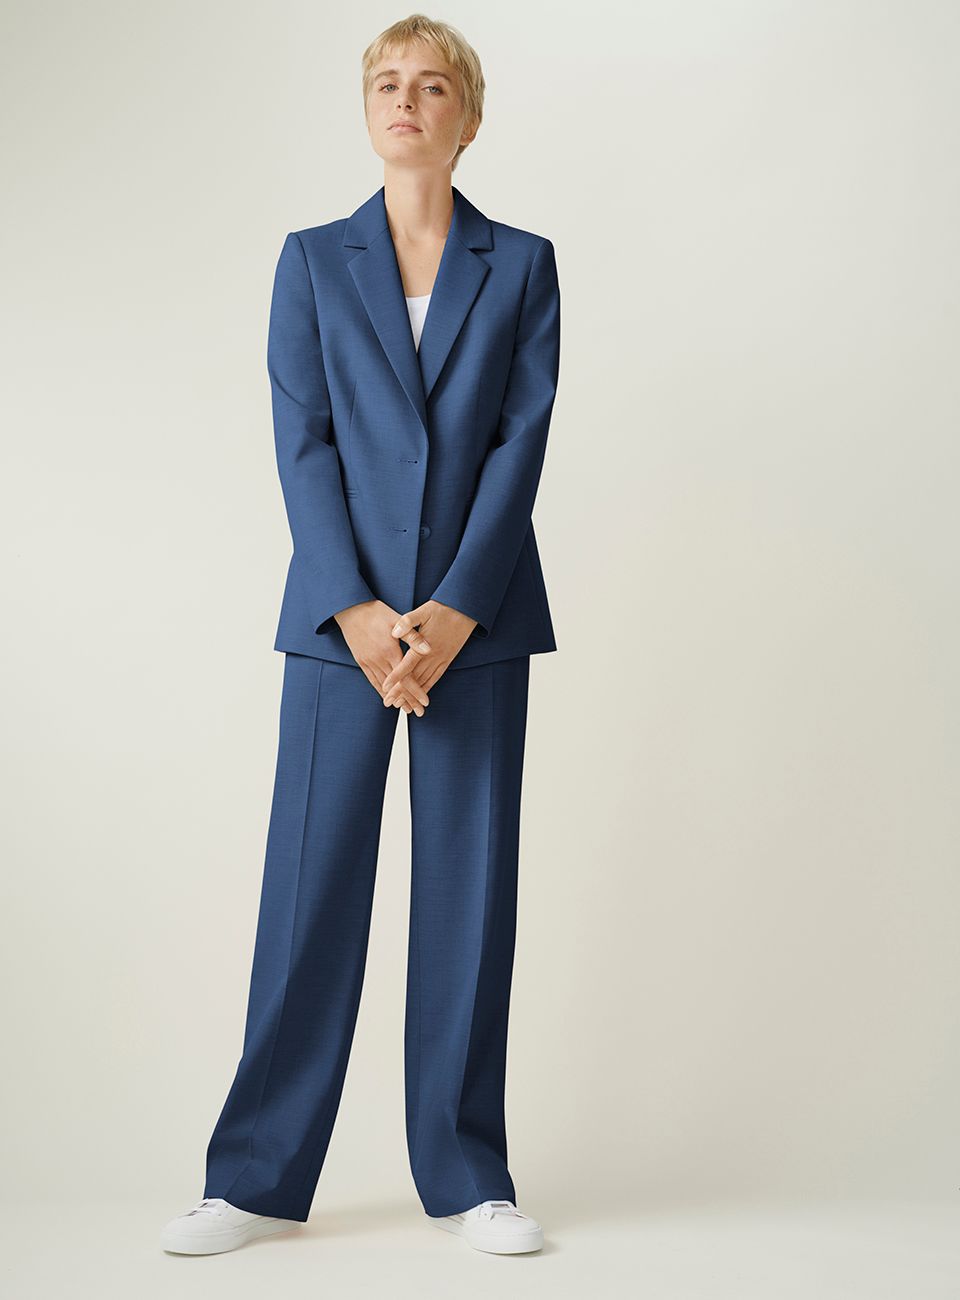 Classic blue trend, suit